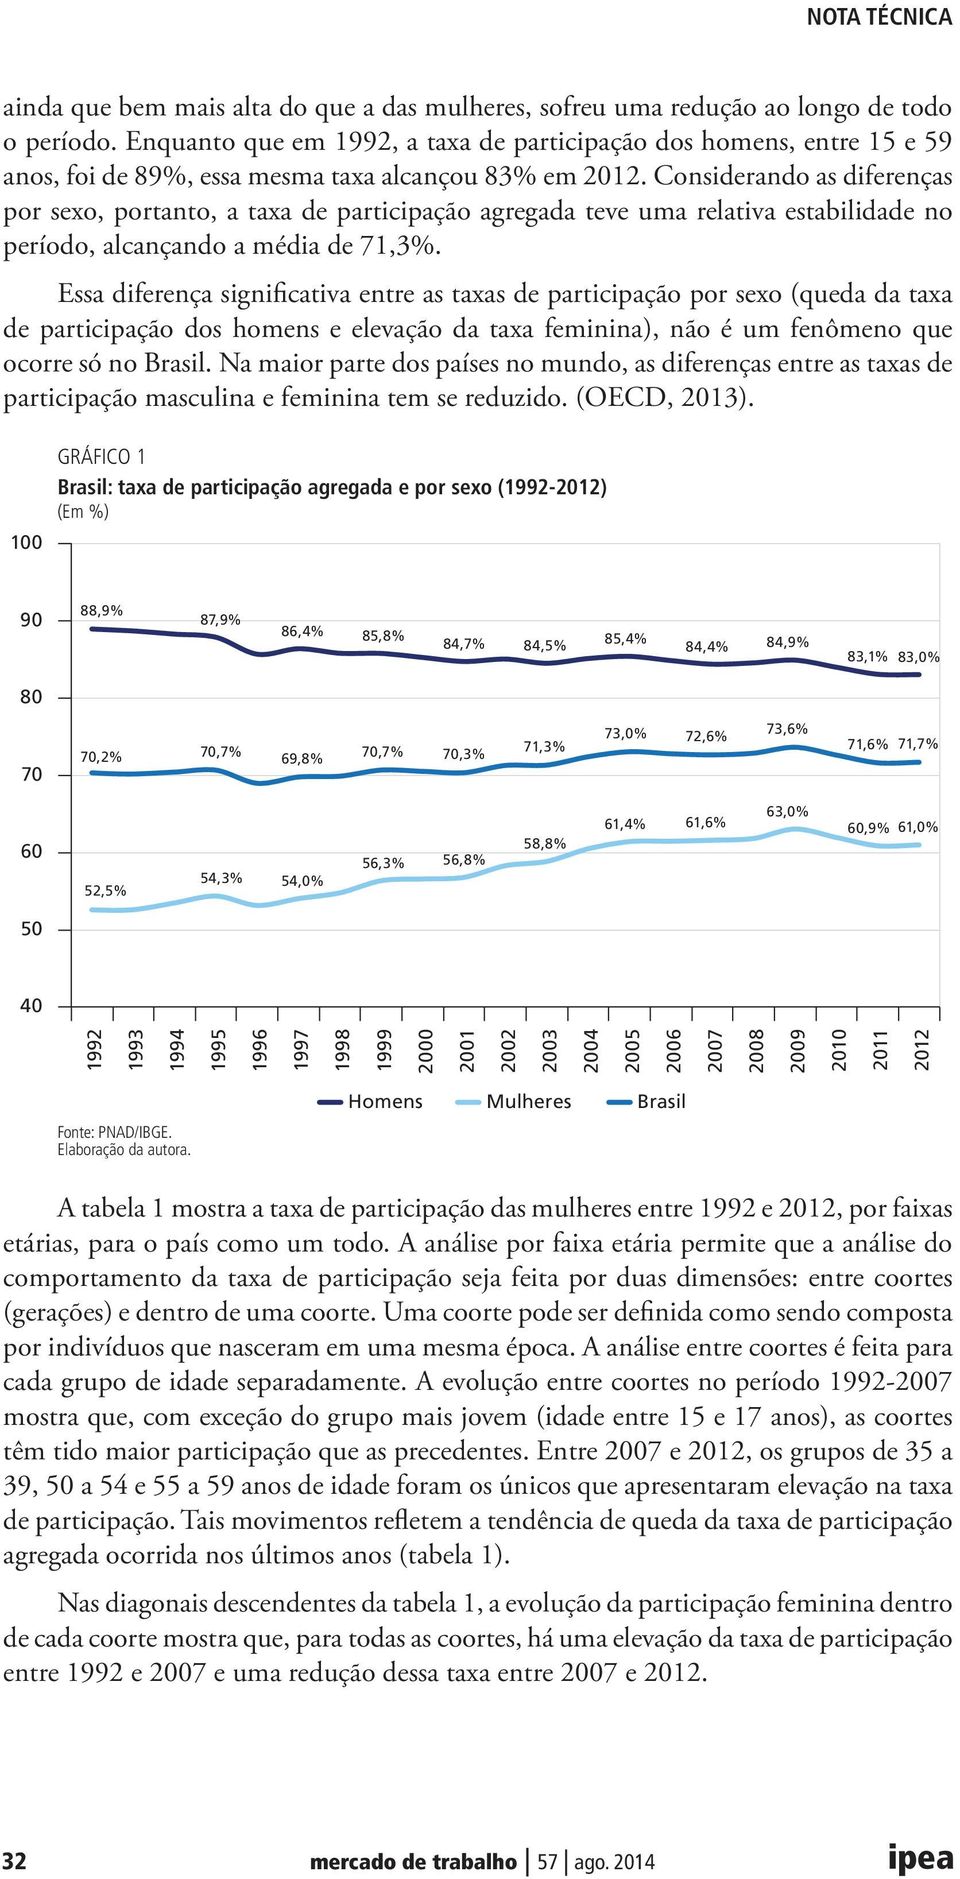 Considerando as diferenças por sexo, portanto, a taxa de participação agregada teve uma relativa estabilidade no período, alcançando a média de 71,3%.